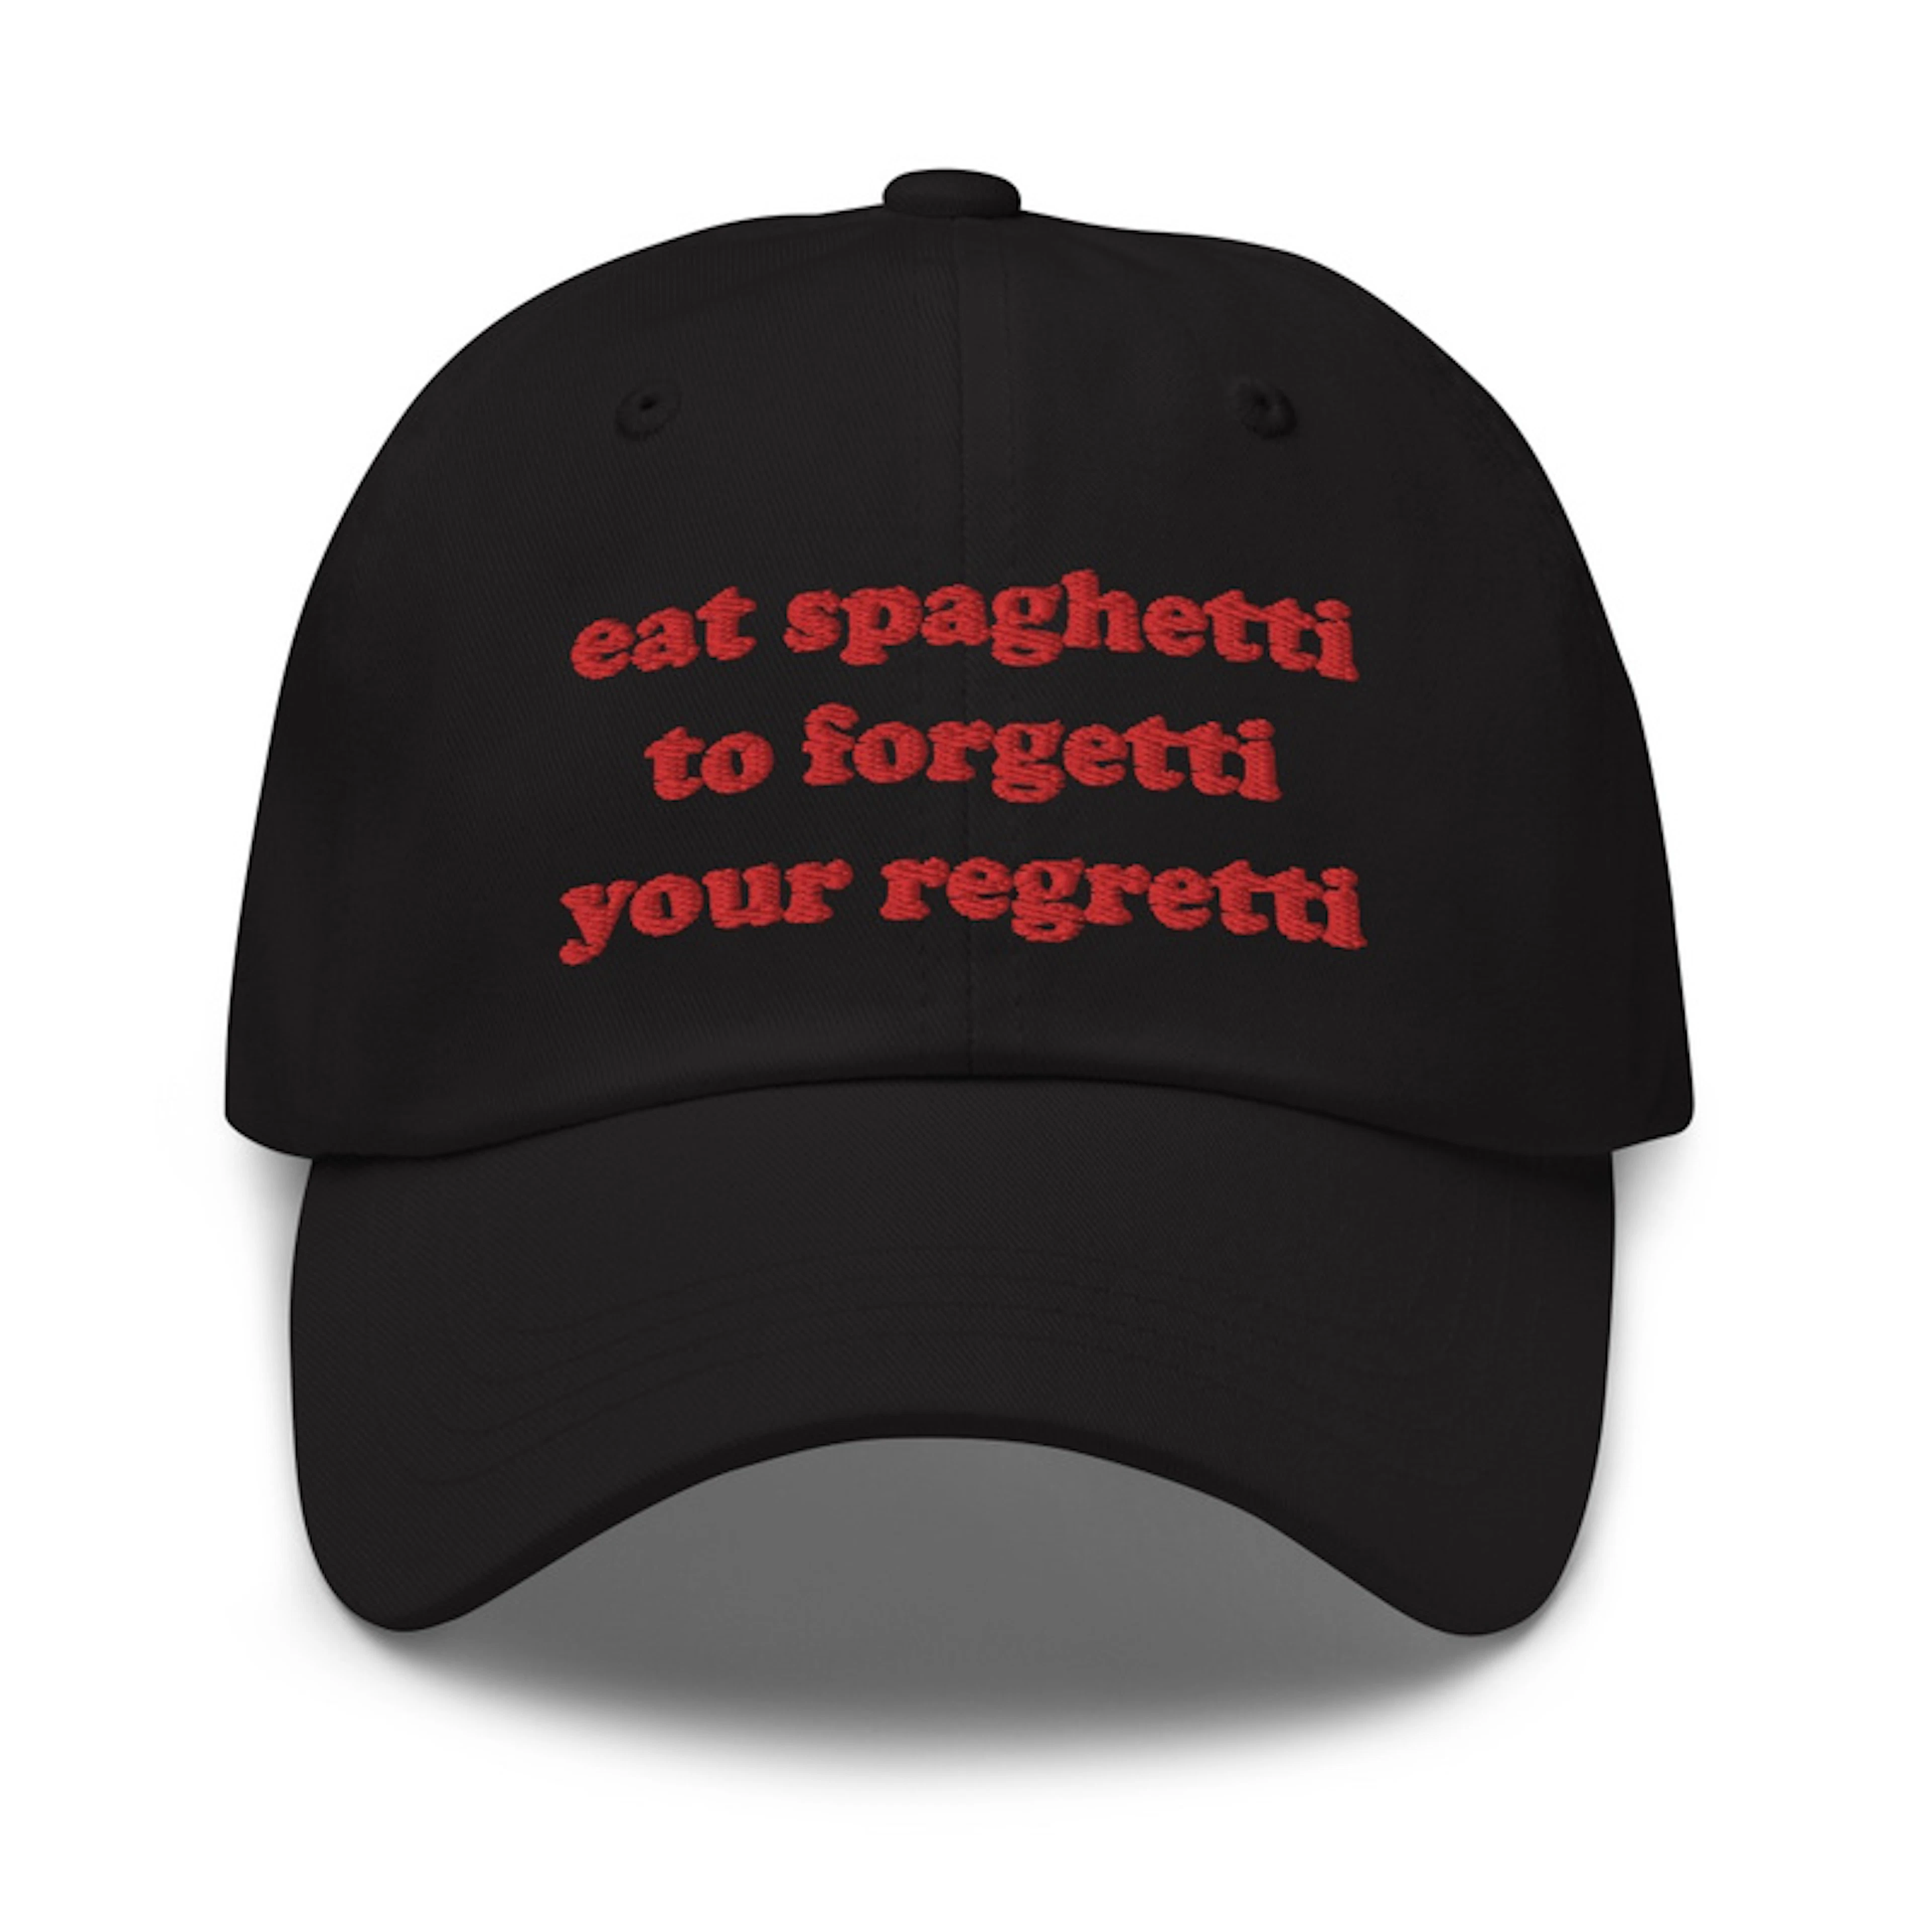 EAT SPAGHETTI TO FORGETTI YOUR REGRETTI